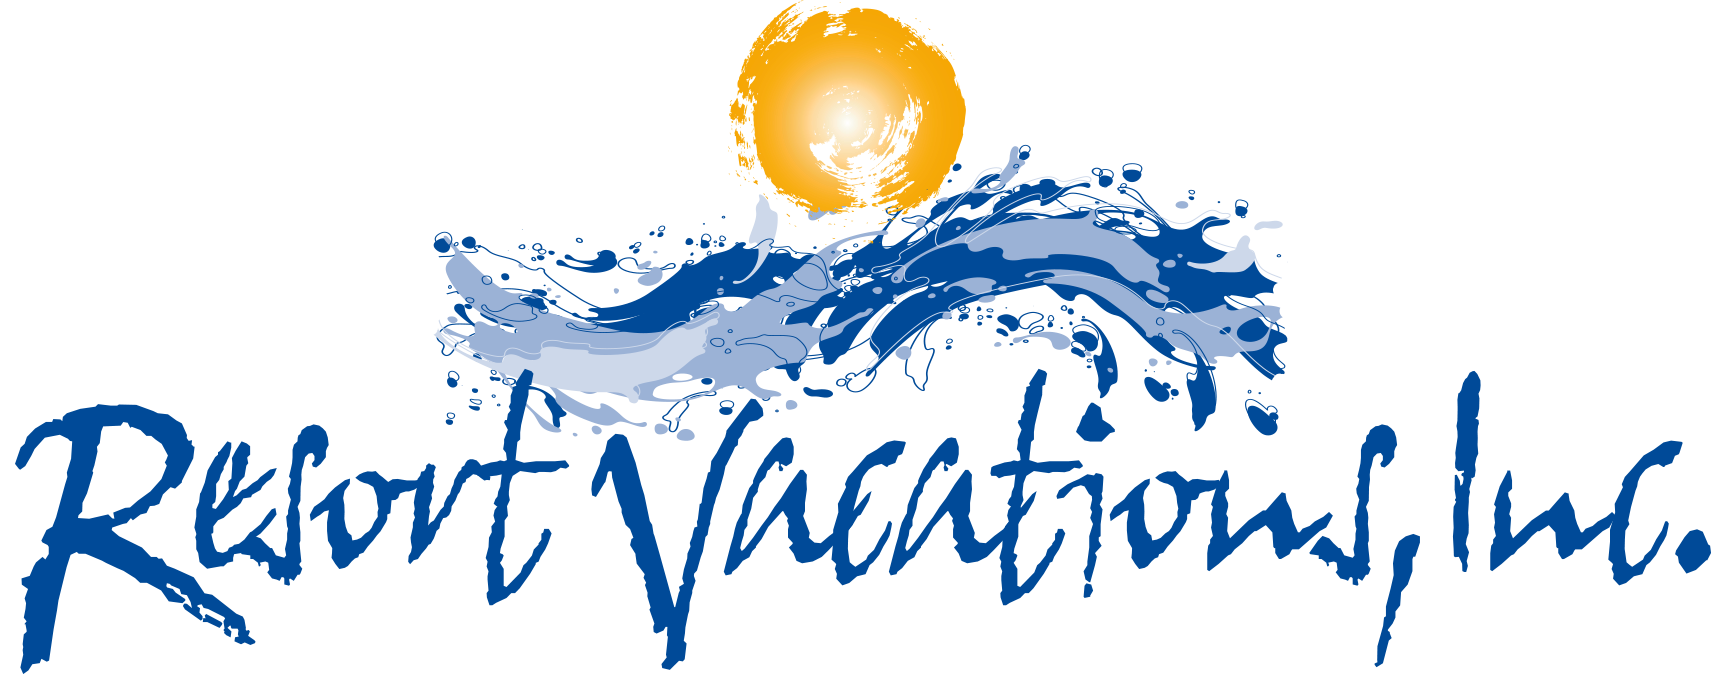 Resort Vacations logo